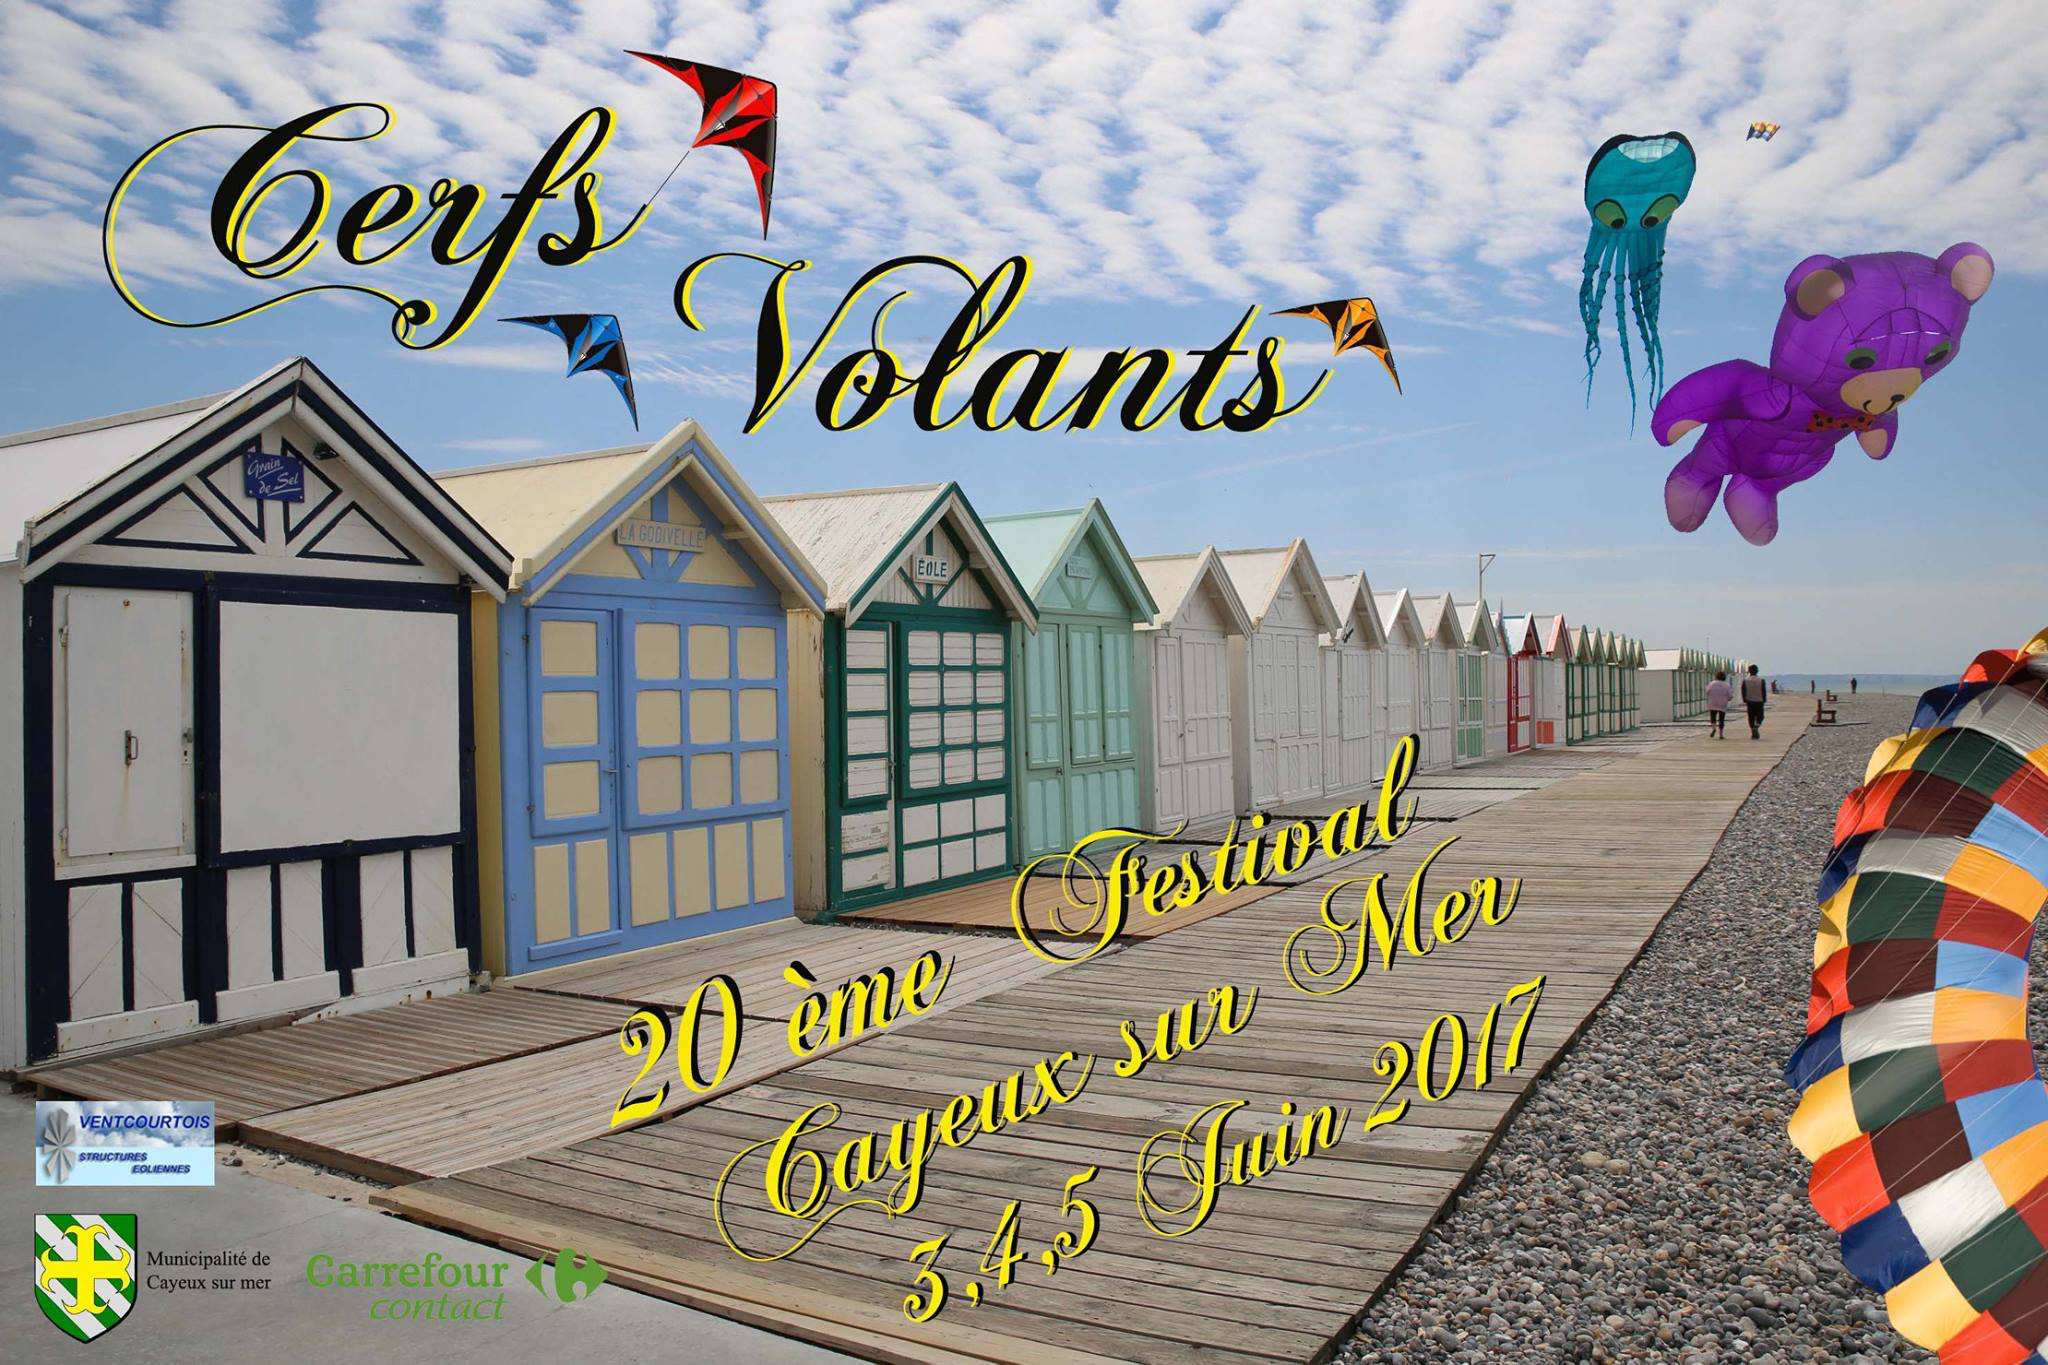 festival des Cerfs-volants 2017 Cayeux-sur-Mer